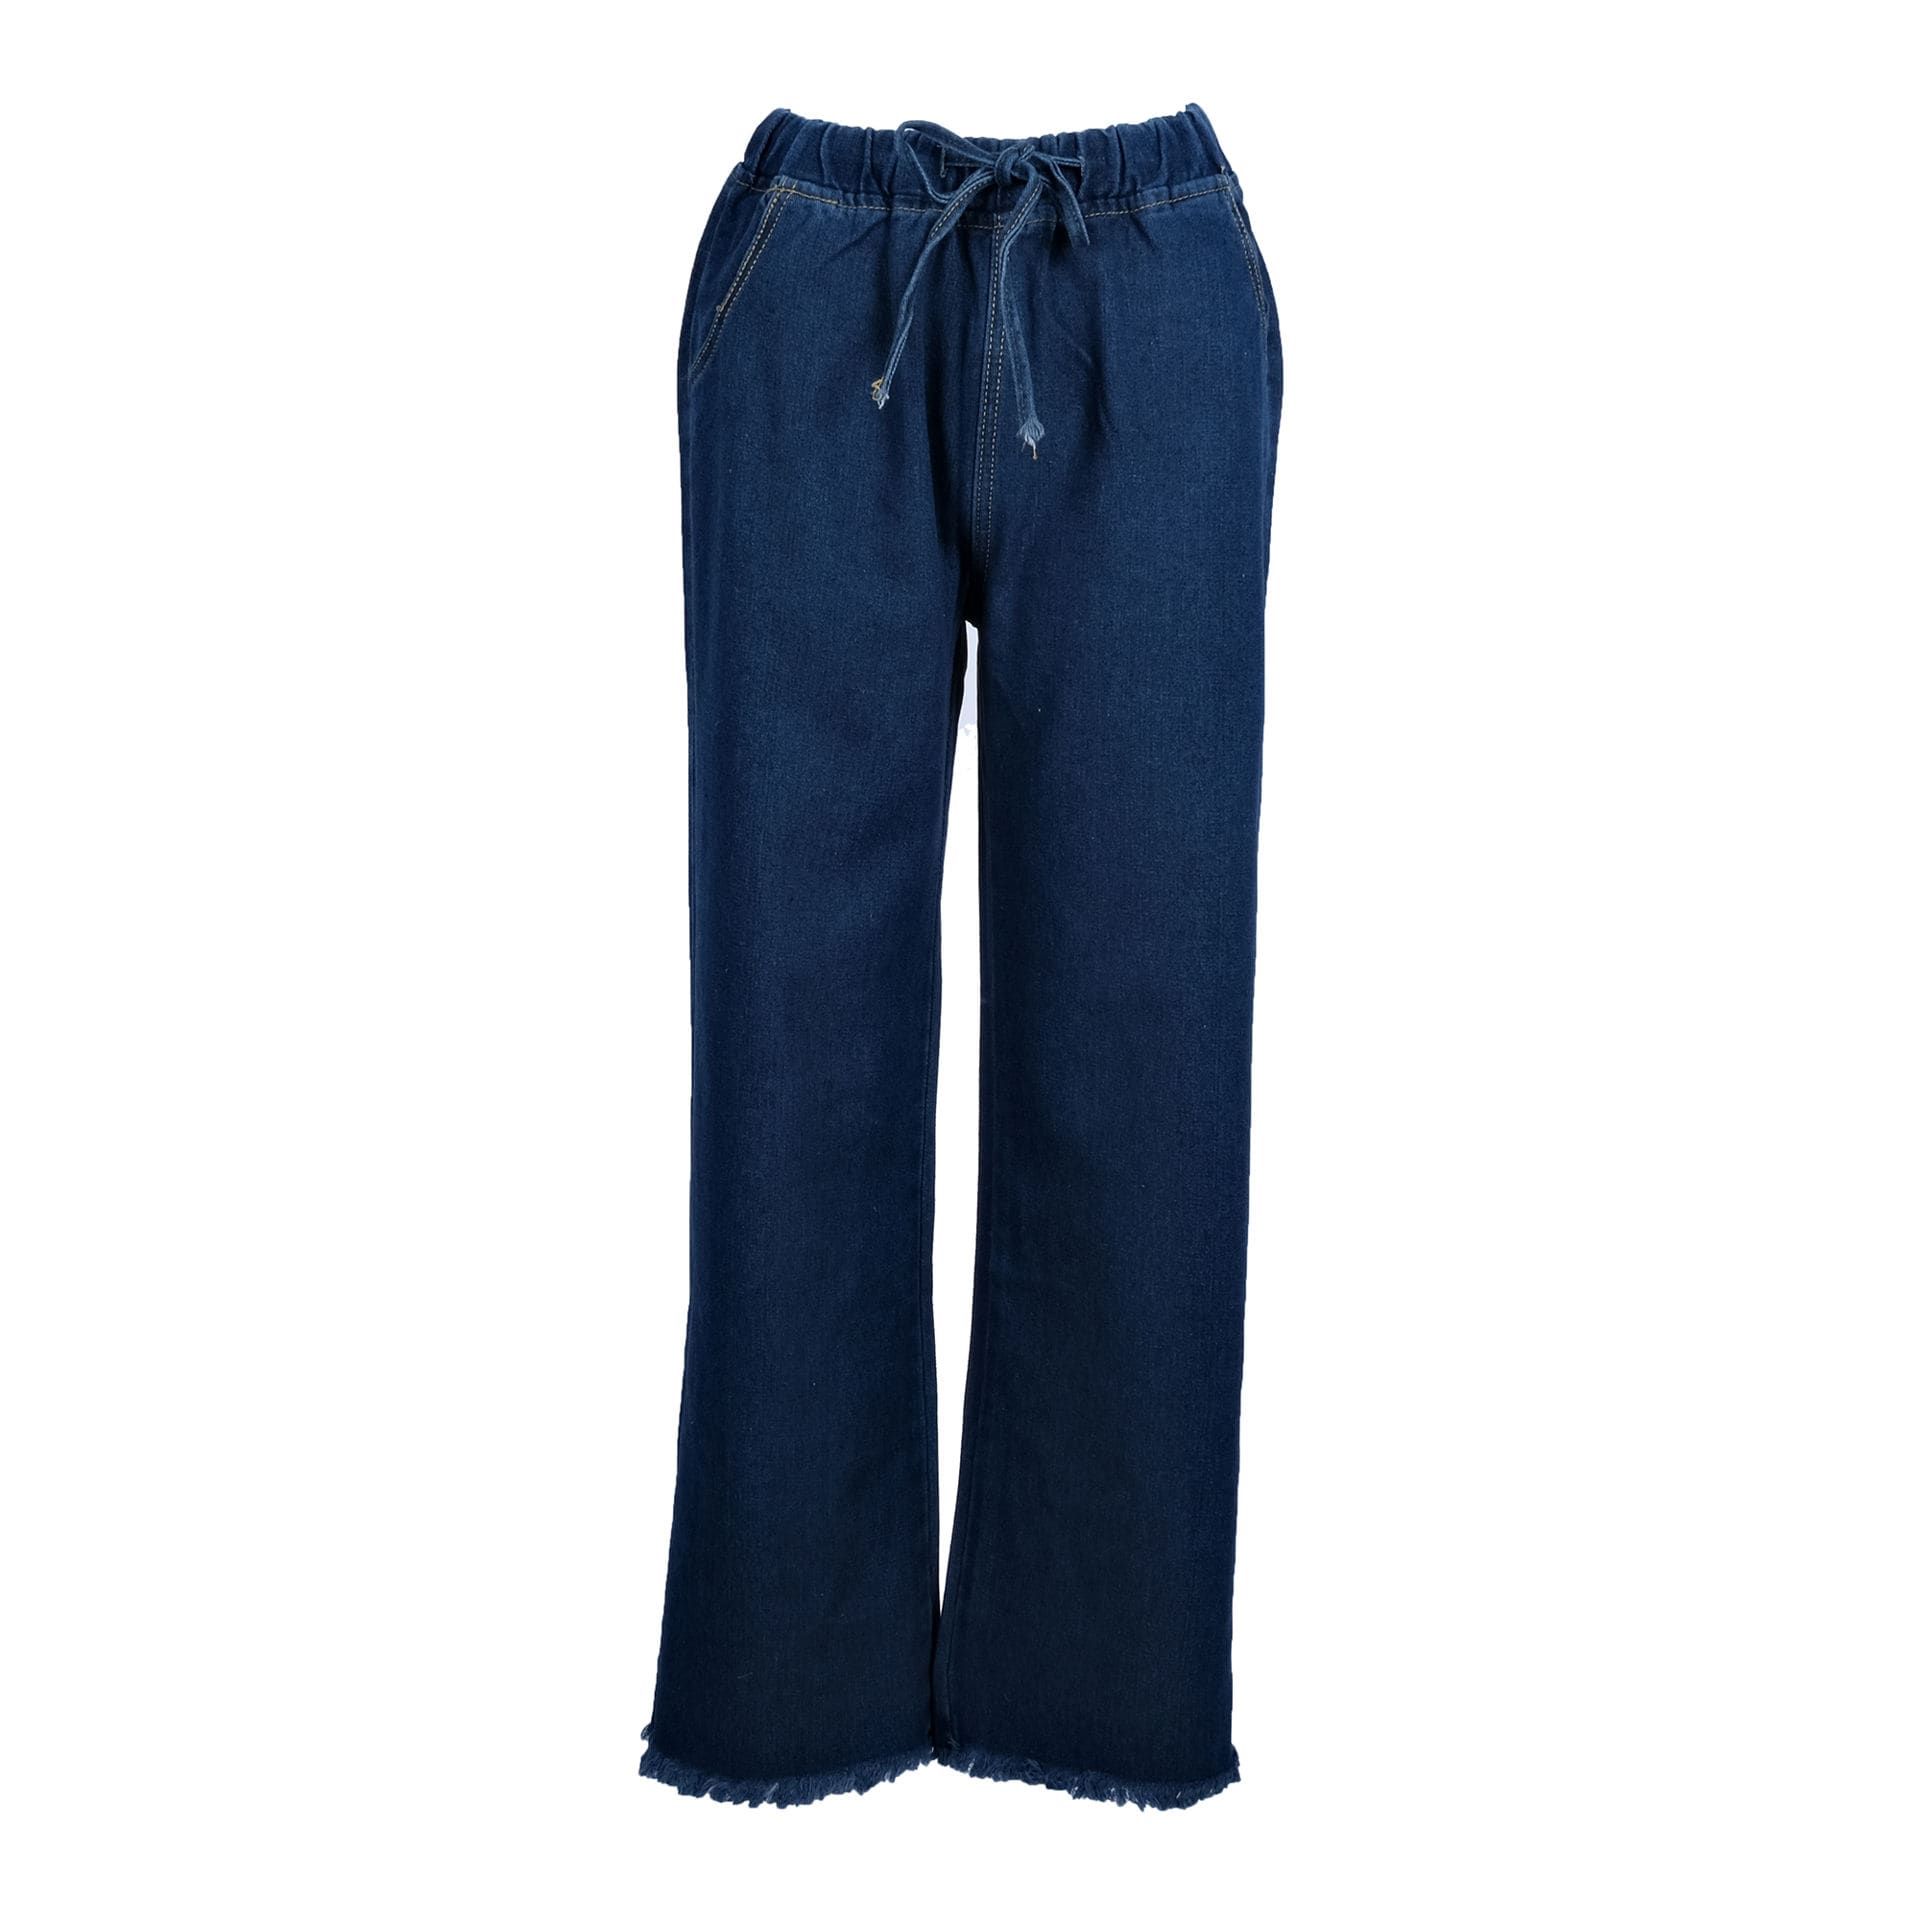 TEN COMMAND Slim Men Blue Jeans - Buy TEN COMMAND Slim Men Blue Jeans  Online at Best Prices in India | Flipkart.com